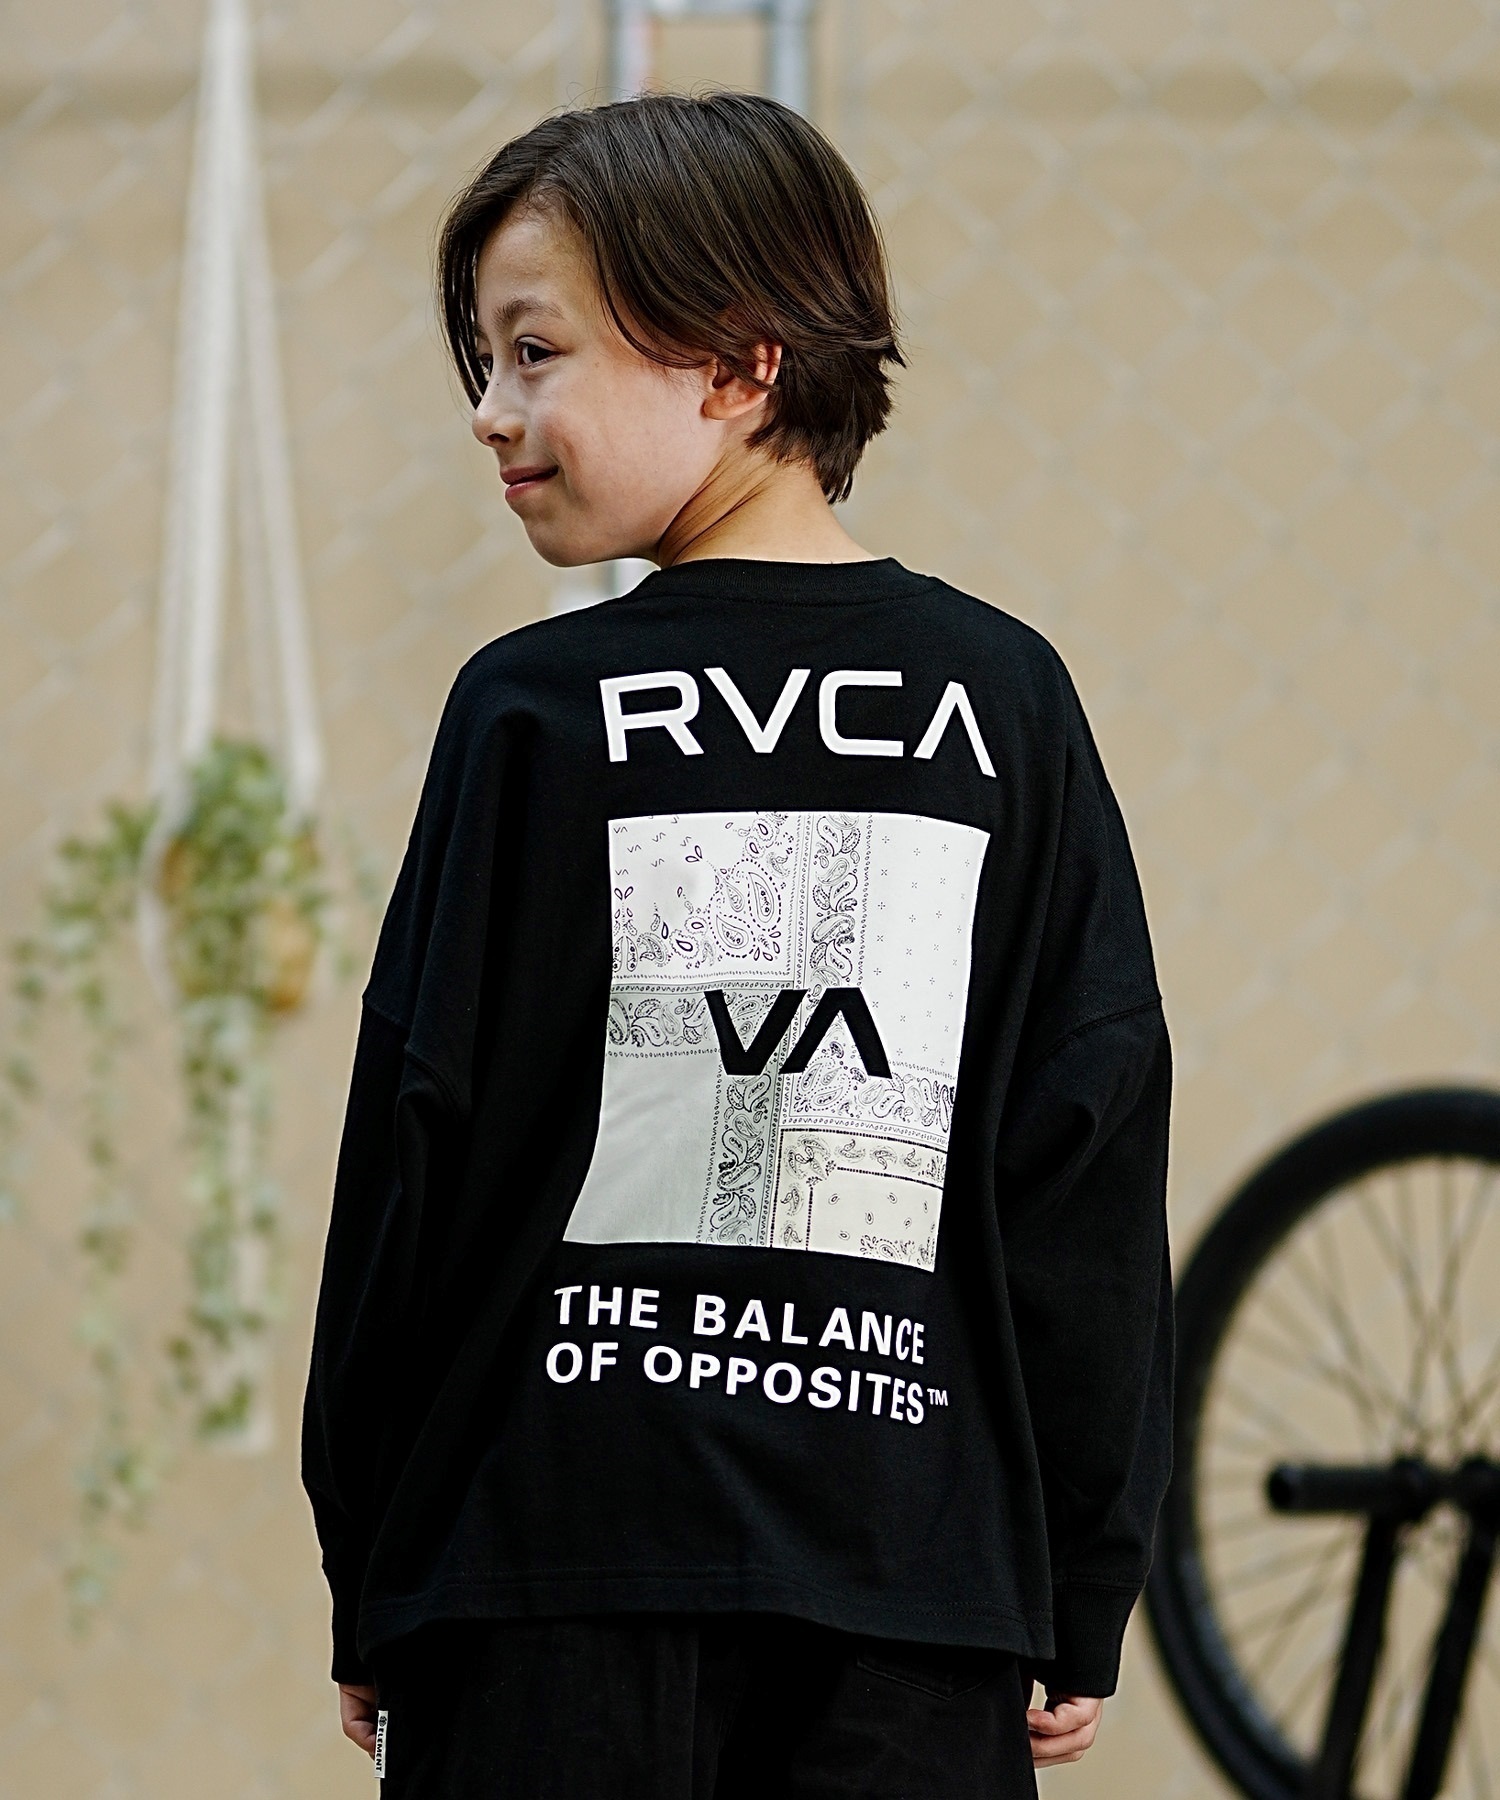 【クーポン対象】RVCA ルーカ キッズ ロングTシャツ ロンT バンダナ柄 130cm?160cm BE045-058(WHT-130cm)